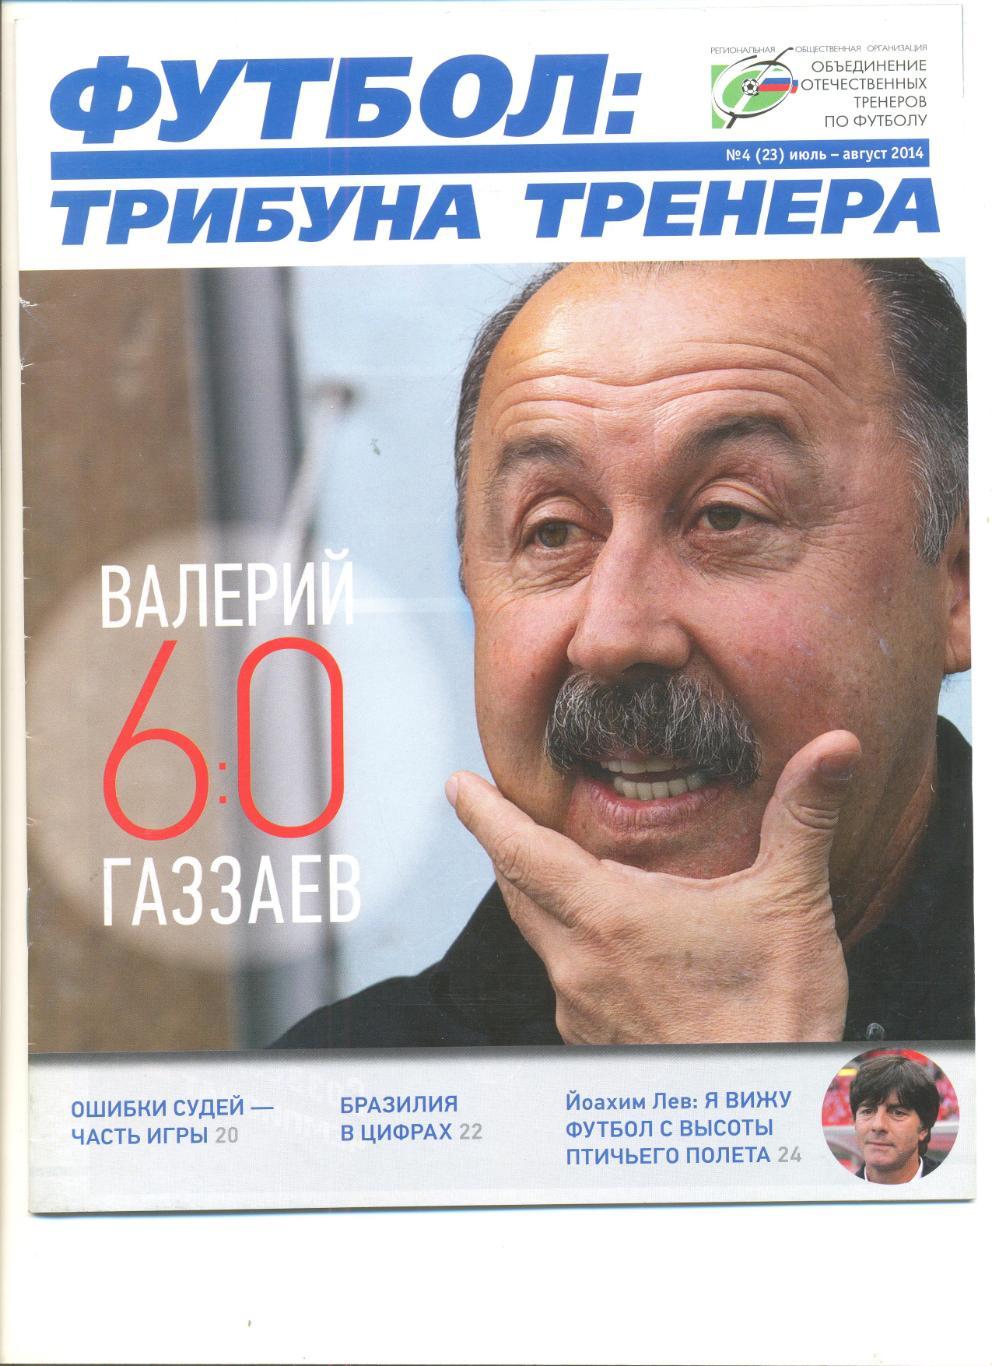 Журнал Футбол. Трибуна тренера№4(23) июль-август 2014 г.